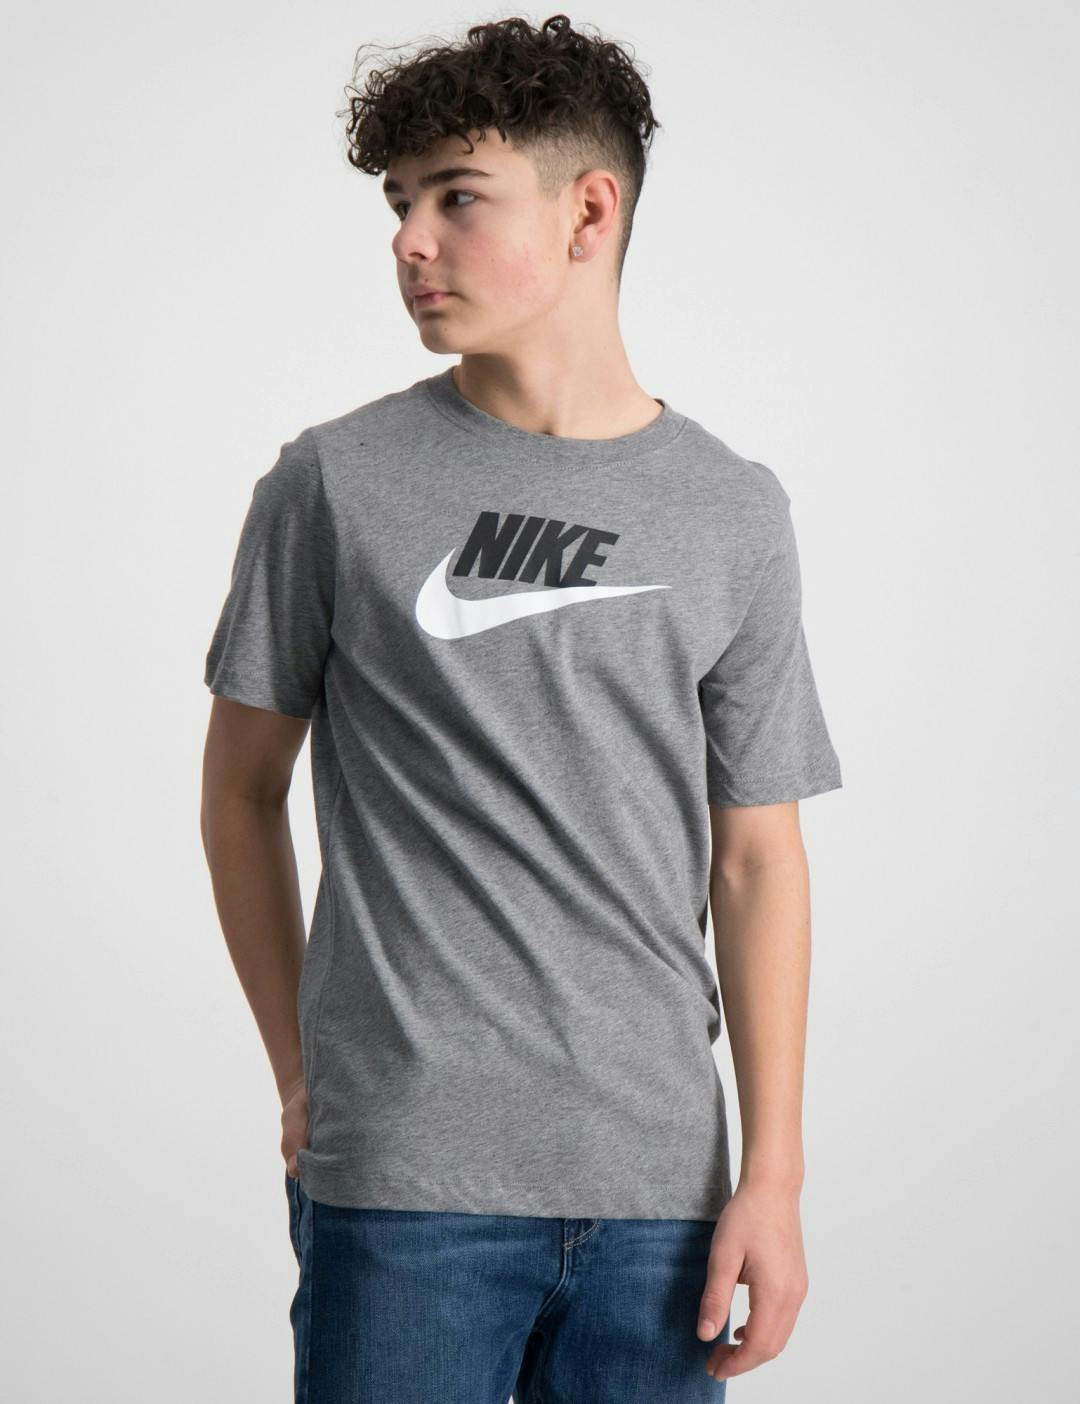 T-shirt Nike Futura för barn